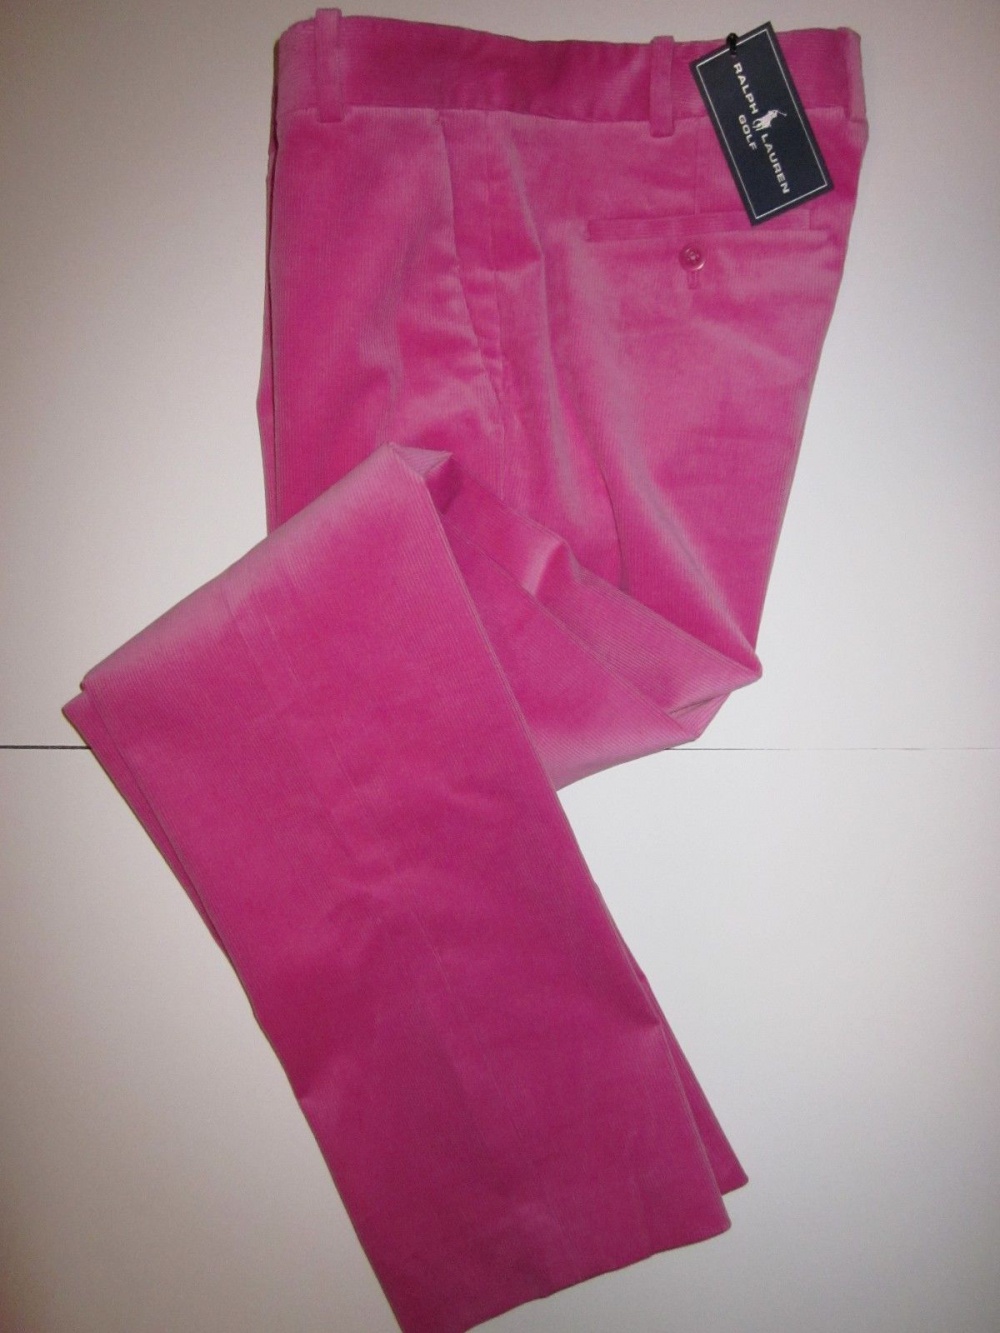 Вельветовые брюки Ralph Lauren Golf  Размер - 2 (42 р.)